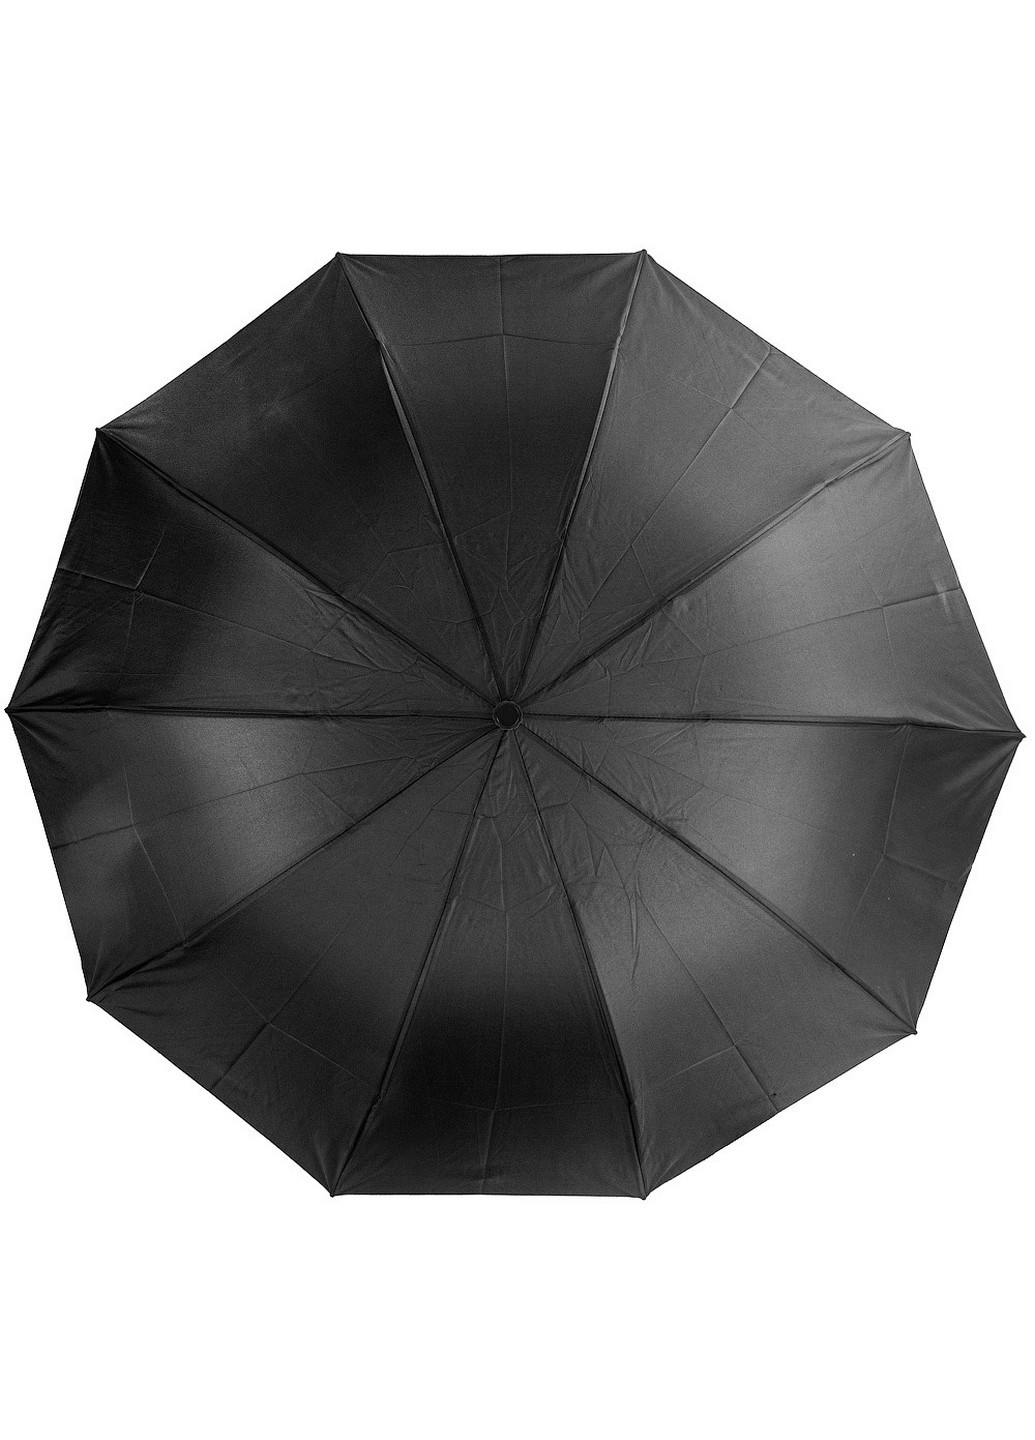 Зонт мужской механический 113 см Eterno (255405288)